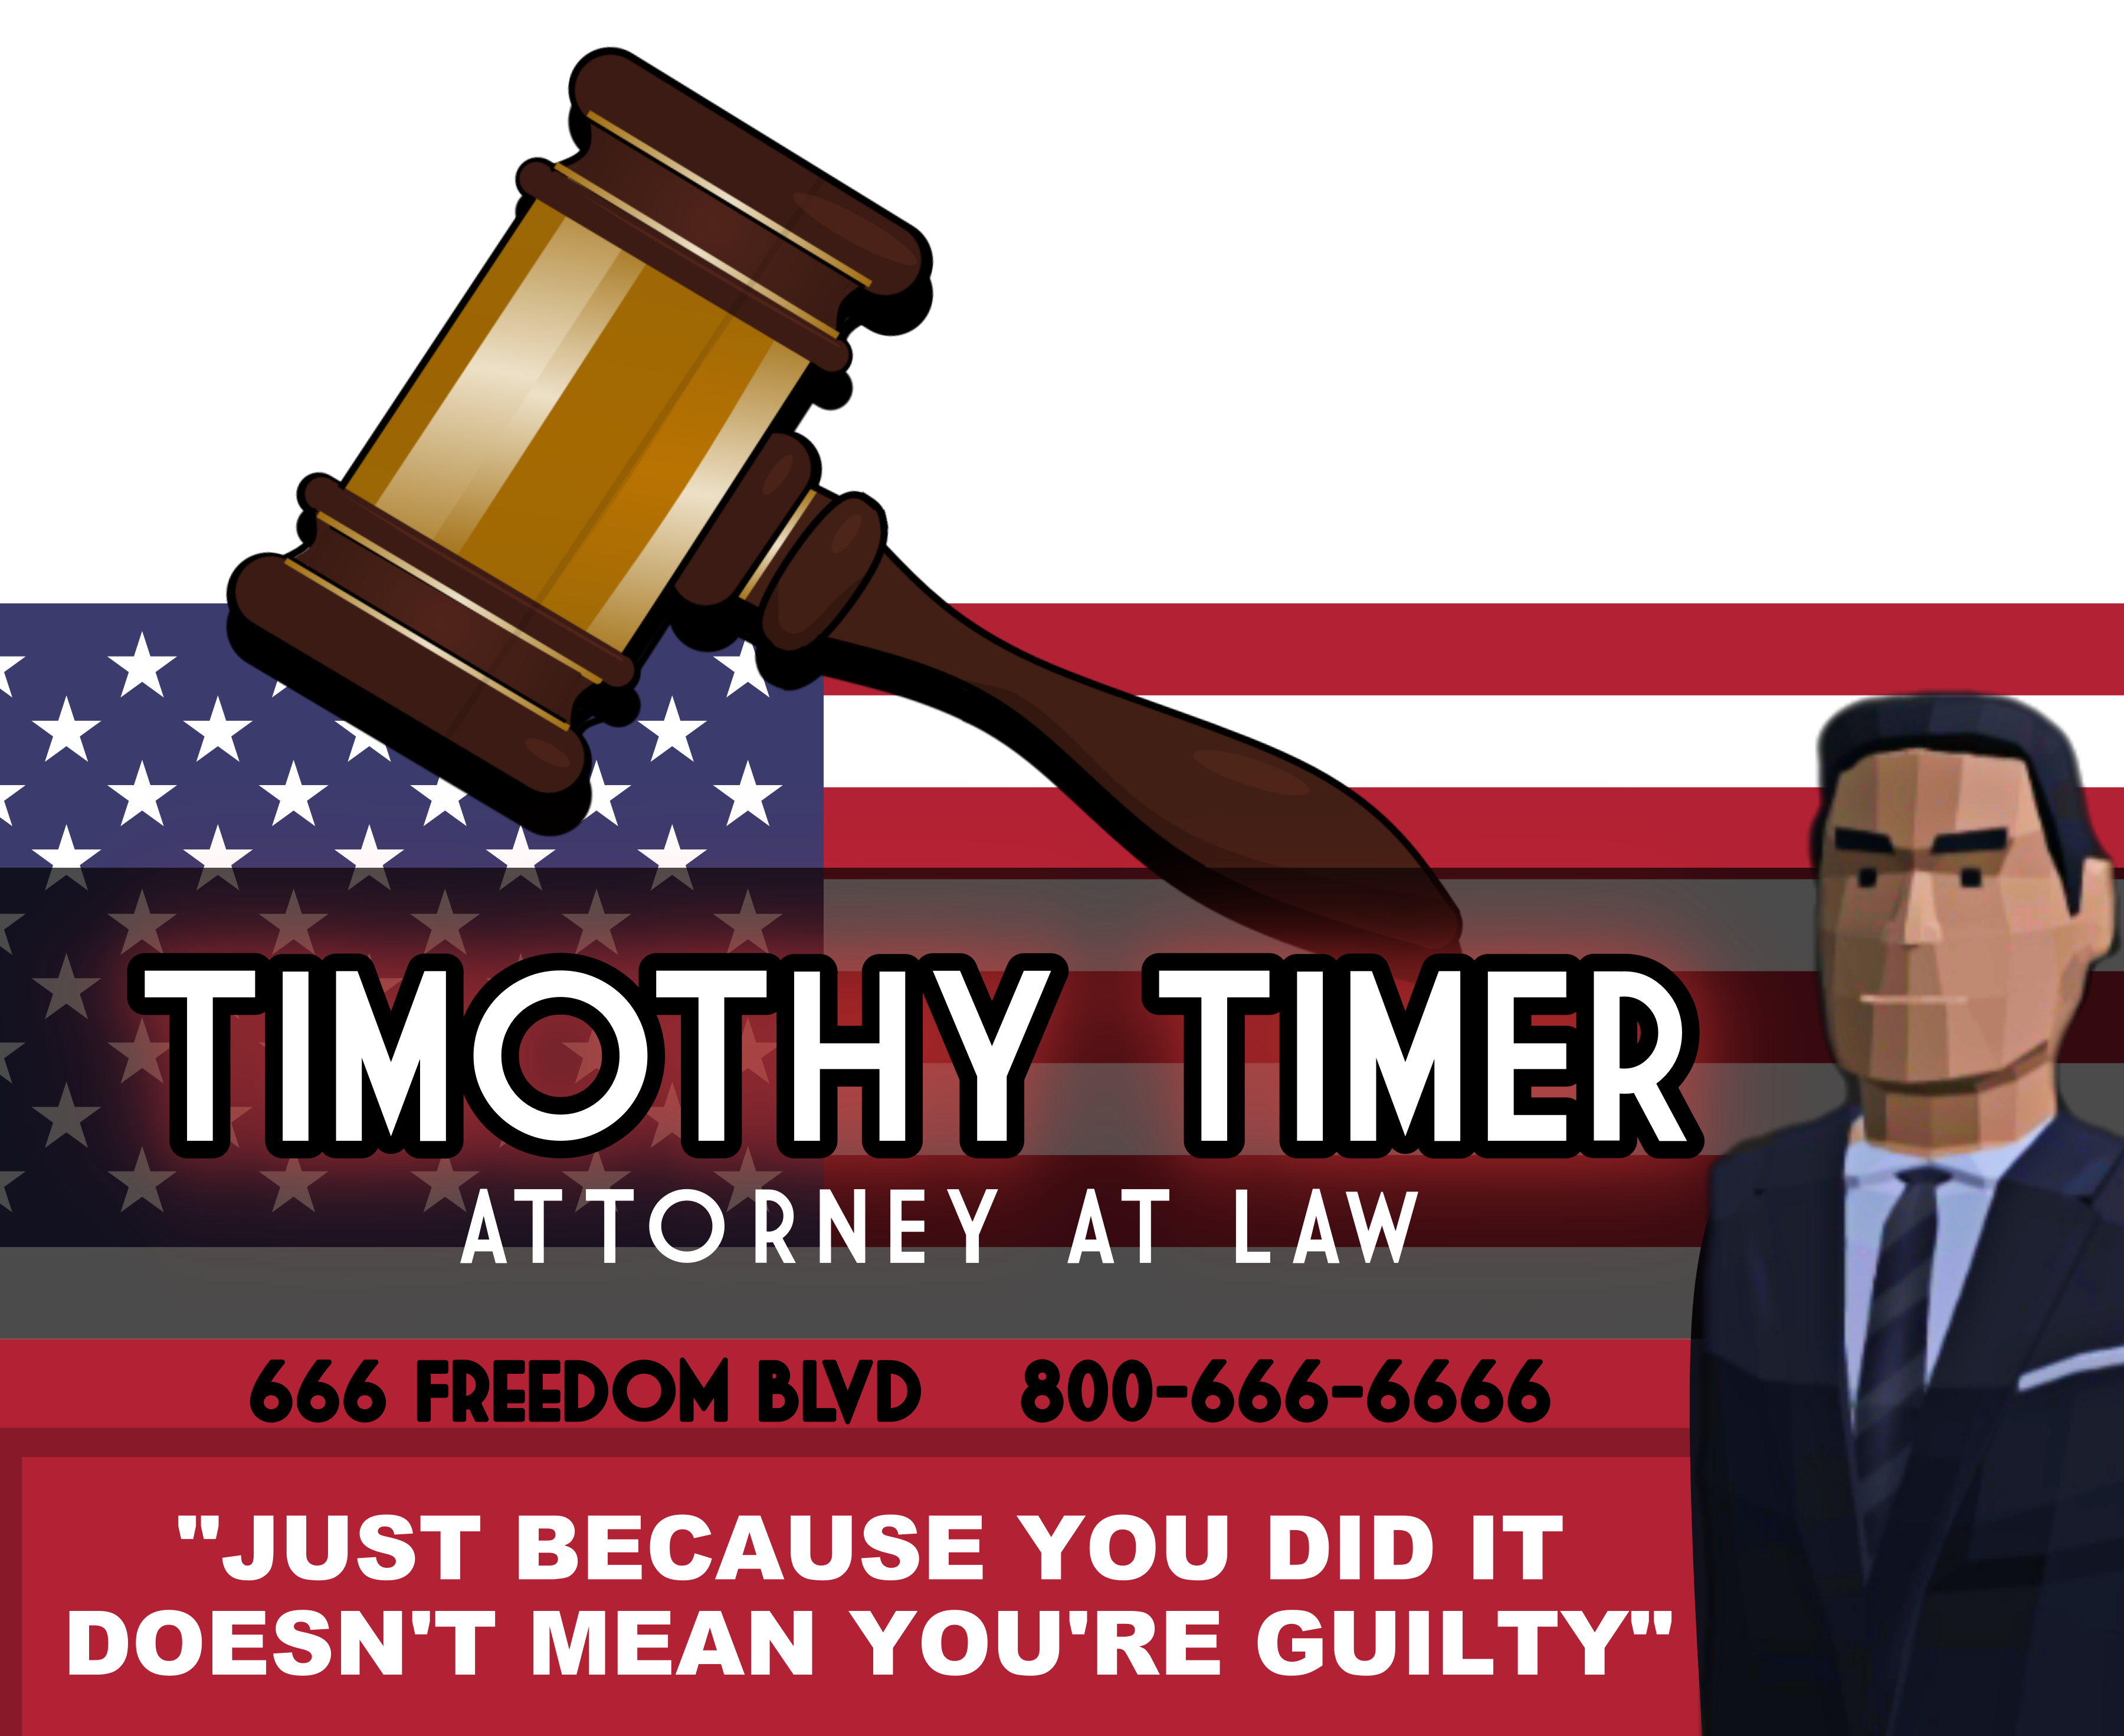 lawyer billboard v5